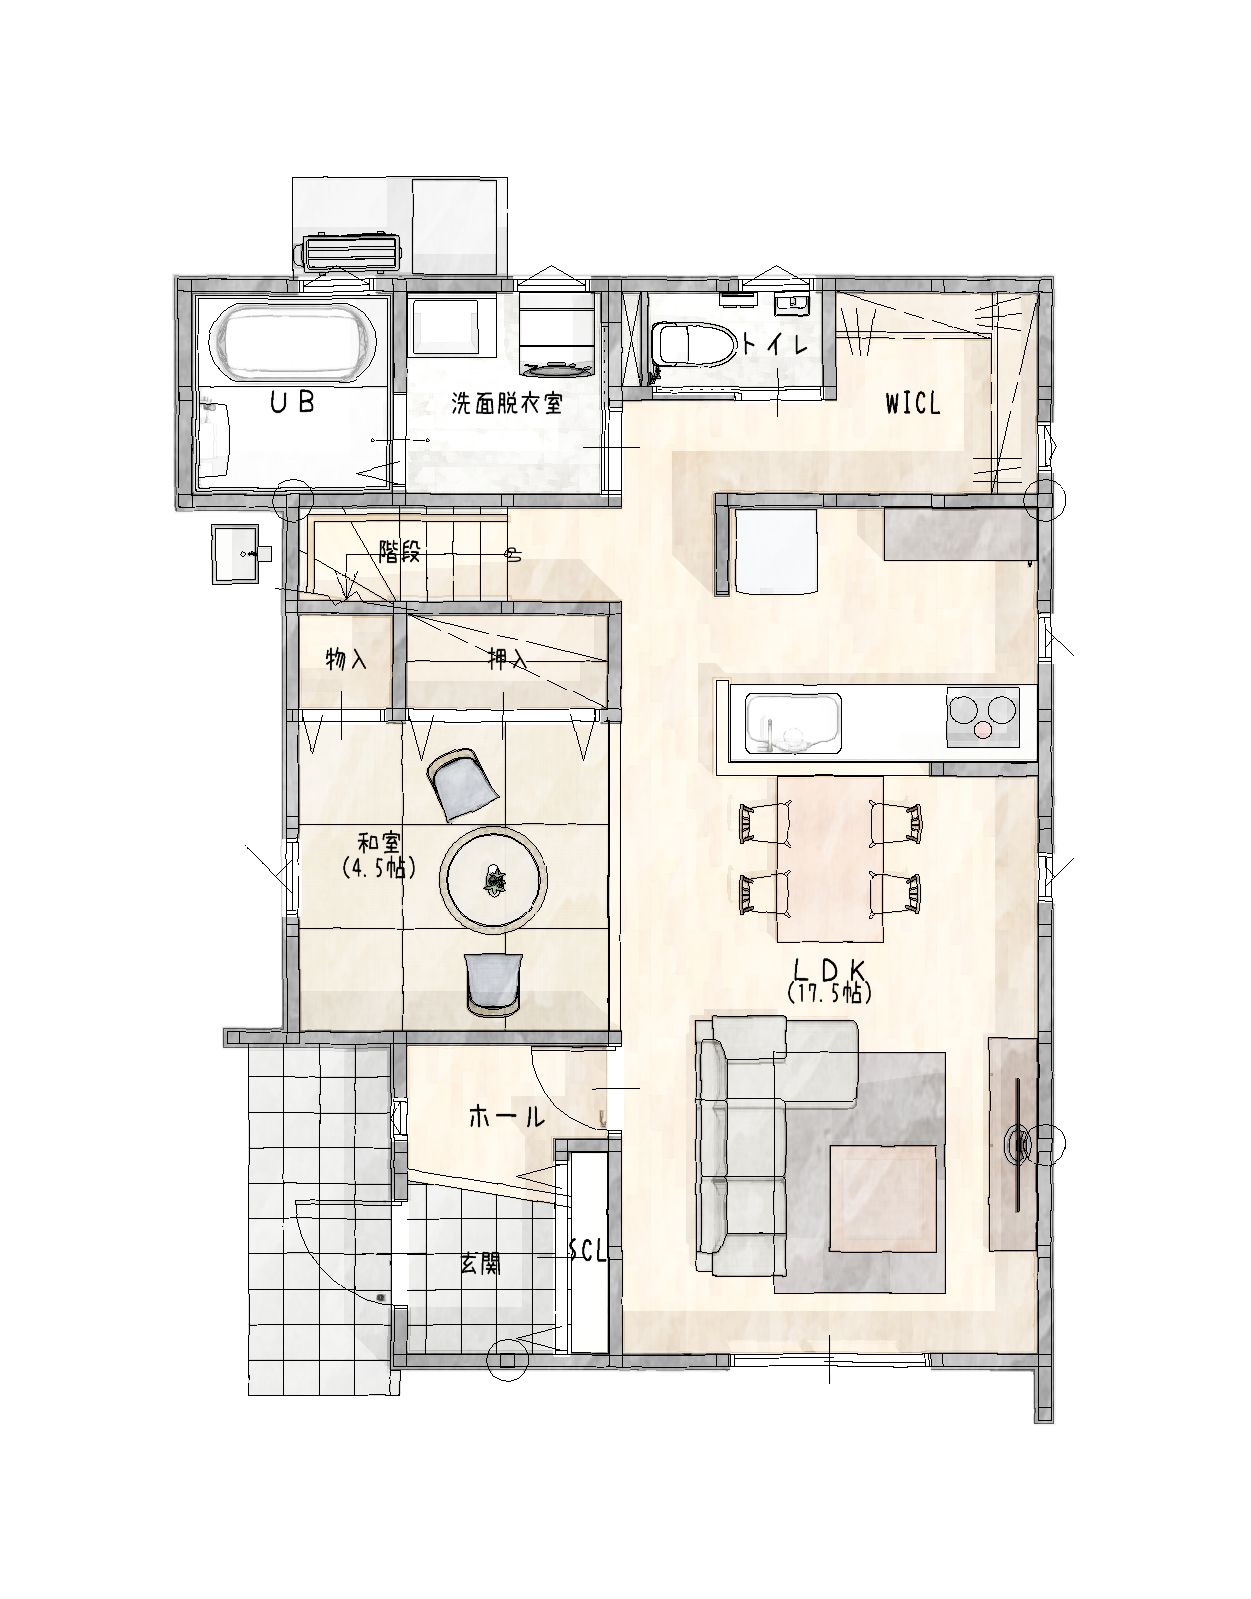 武雄市新築住宅「OURS川良6号地」1階平面図